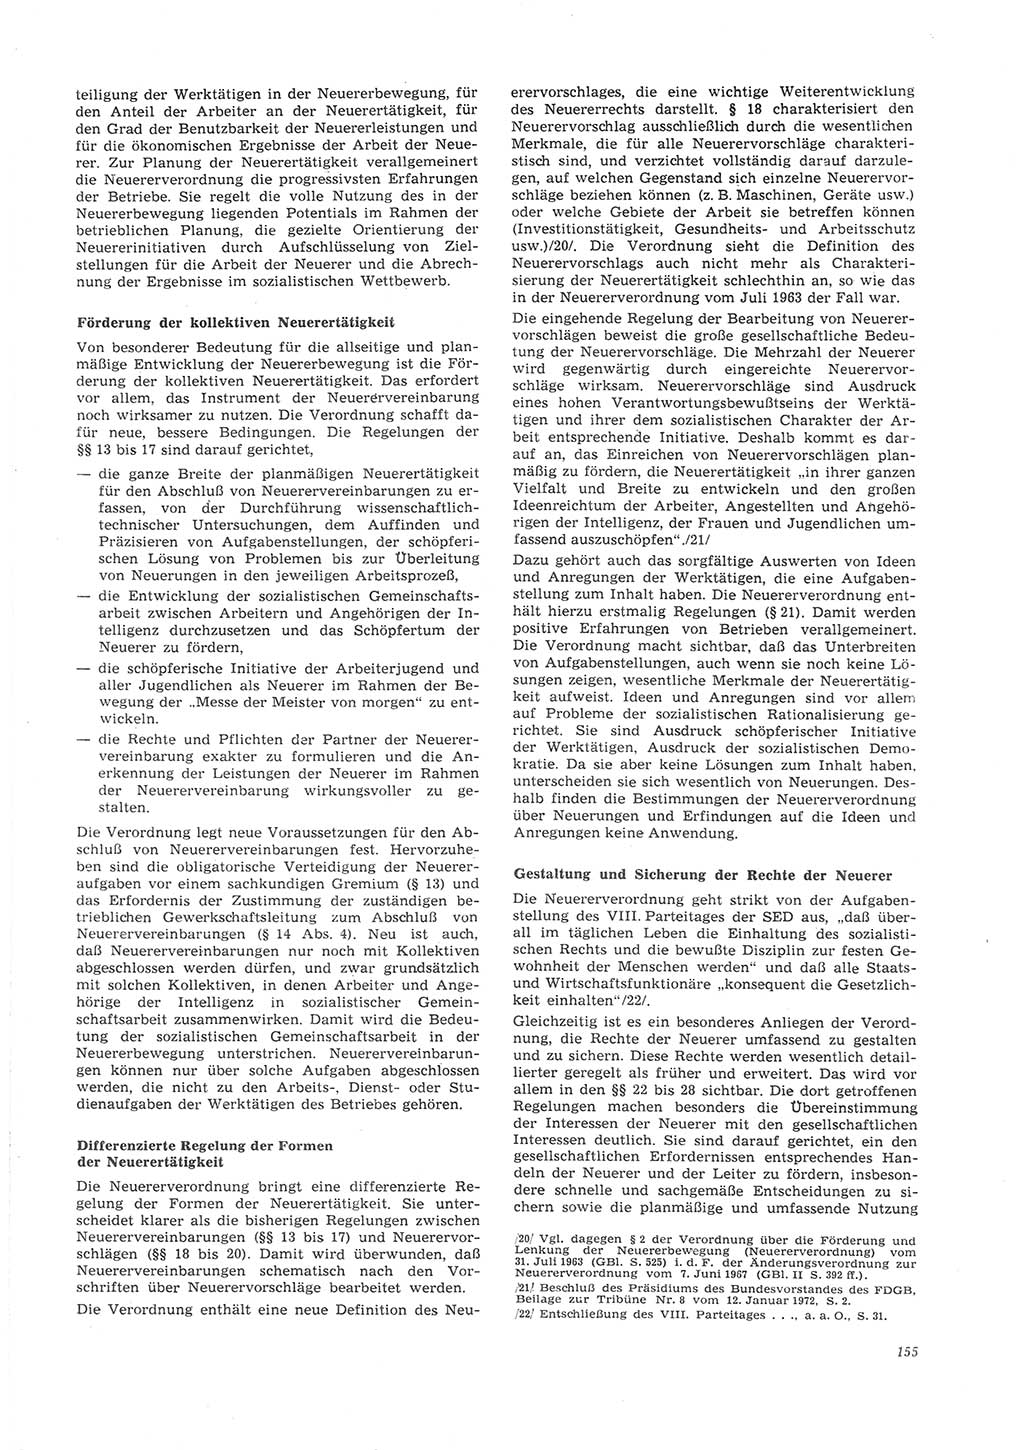 Neue Justiz (NJ), Zeitschrift für Recht und Rechtswissenschaft [Deutsche Demokratische Republik (DDR)], 26. Jahrgang 1972, Seite 155 (NJ DDR 1972, S. 155)